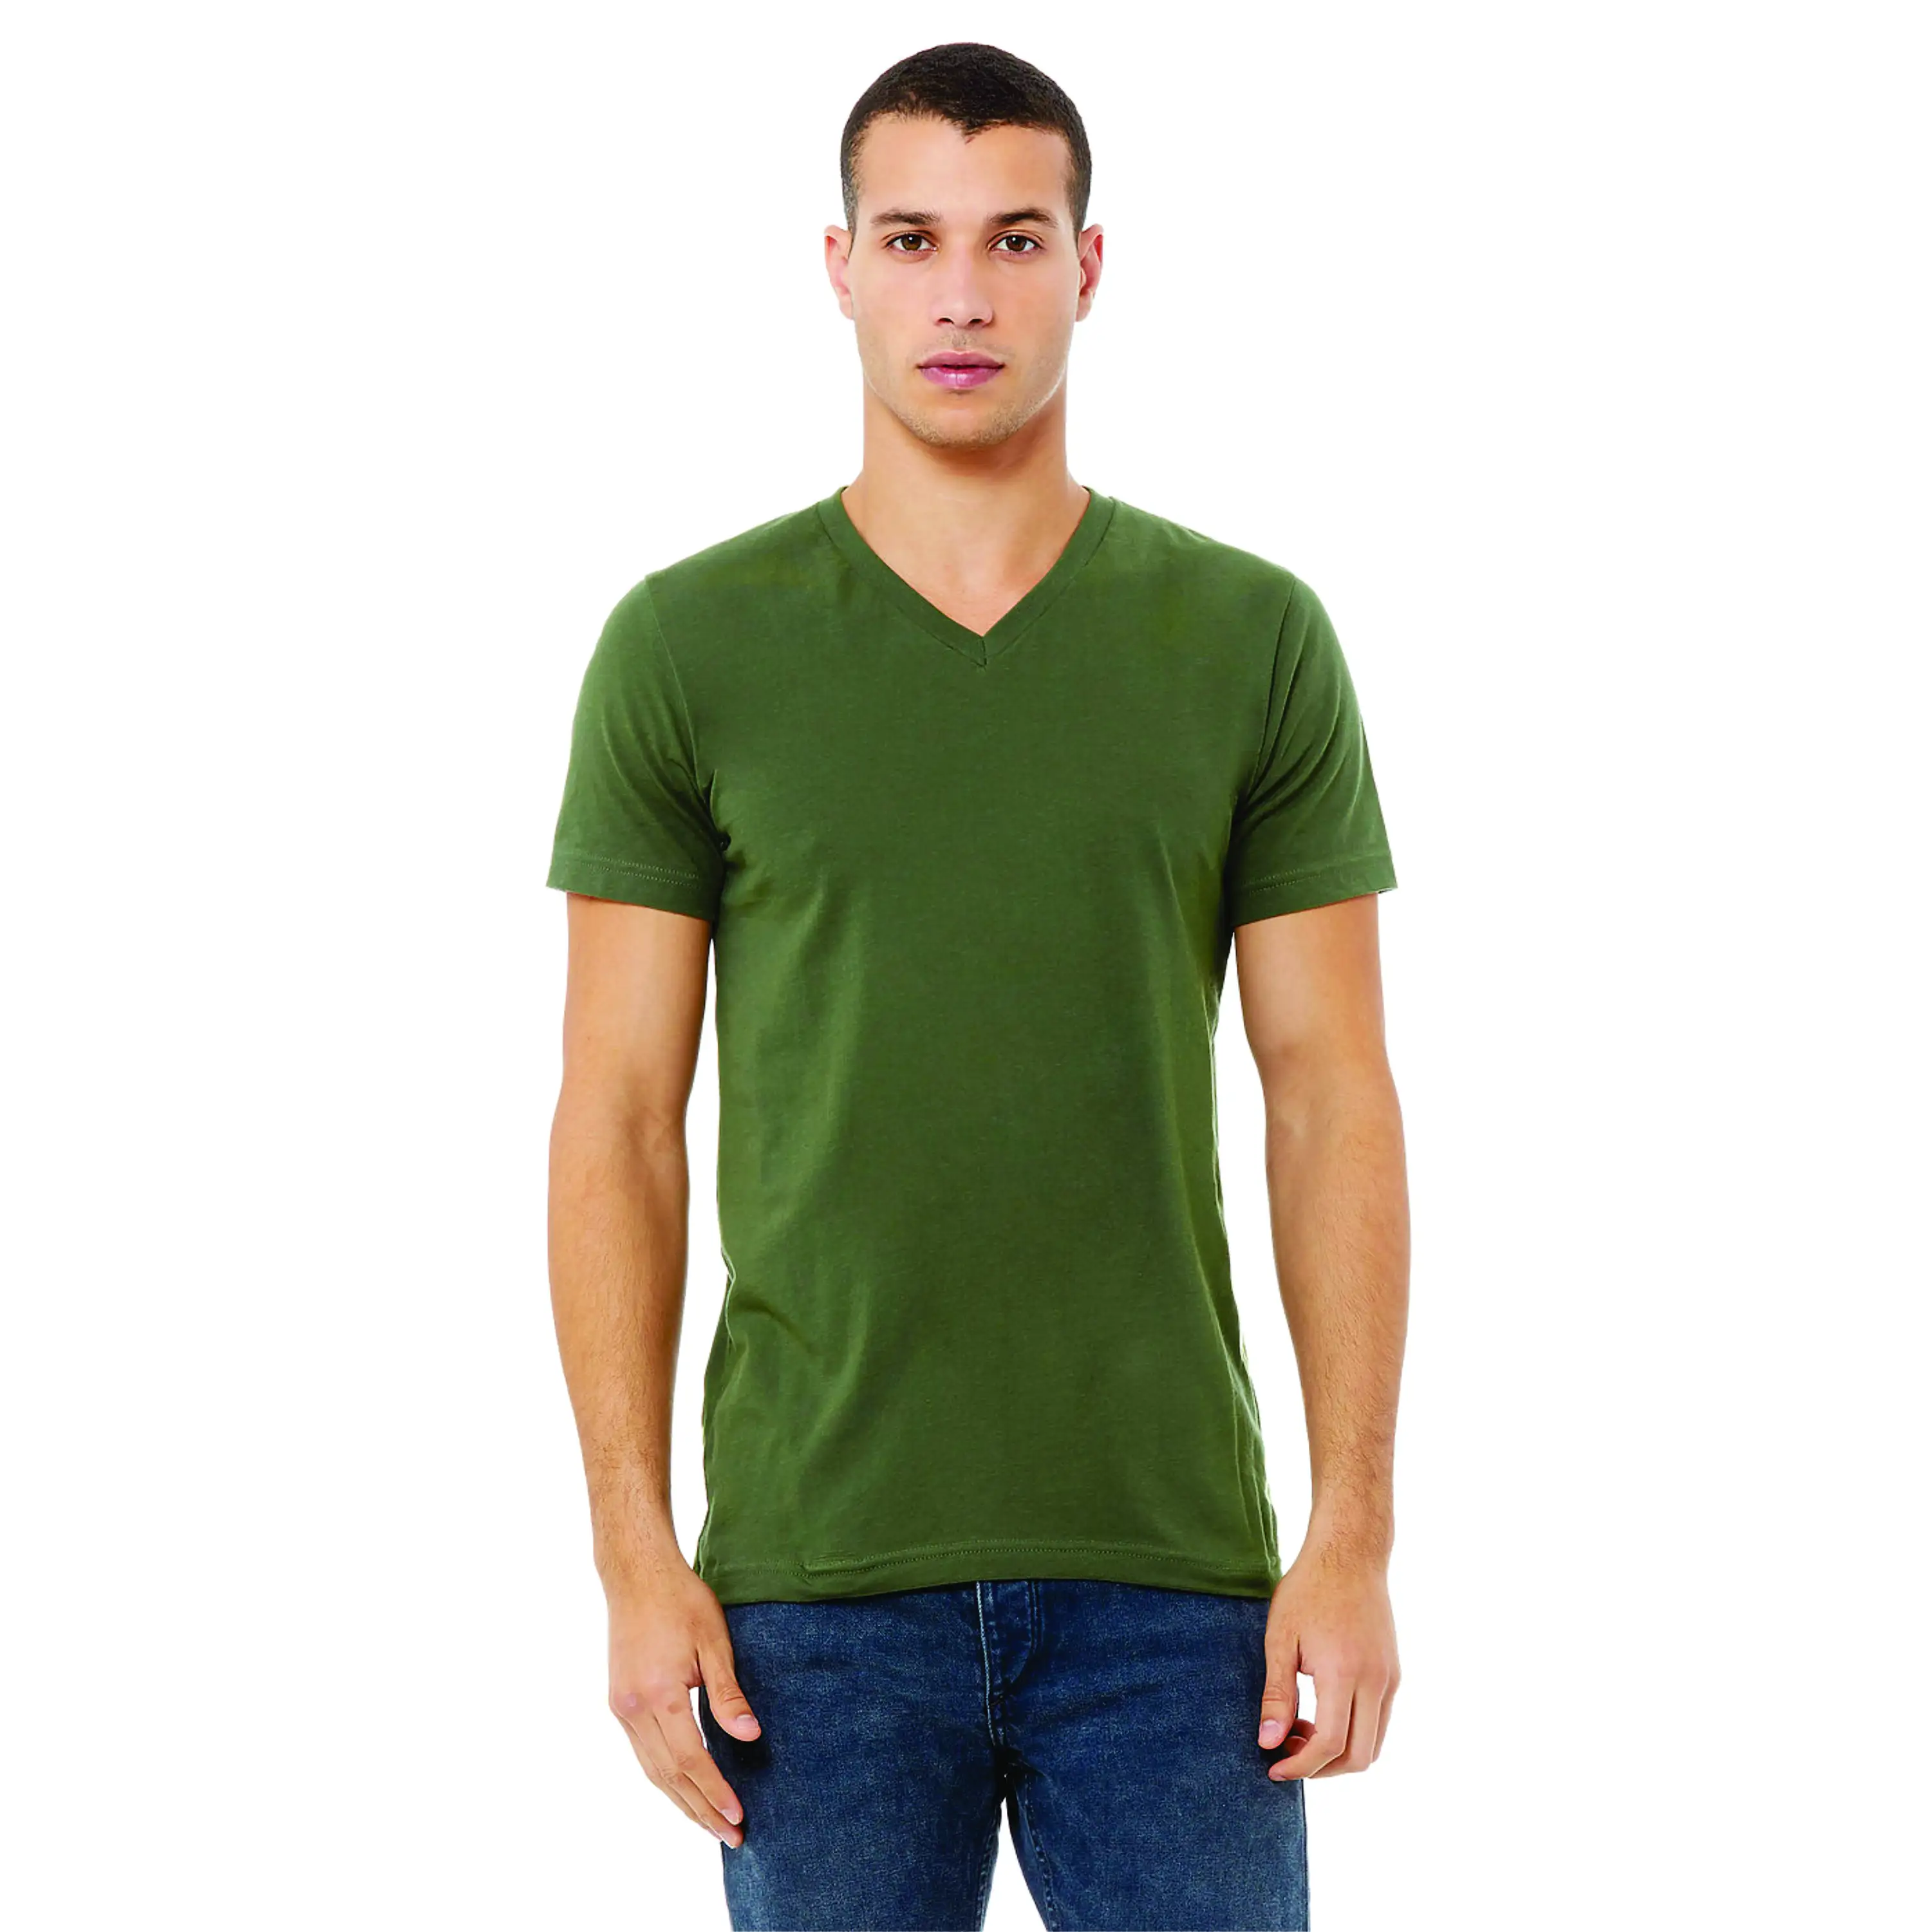 Airlume เสื้อยืดคอวีแขนสั้นสำหรับทุกเพศ,เสื้อสีเขียวทหาร32 Oz 100% ออนซ์ผ้าฝ้ายปั่นได้และแหวนปั่น4.2